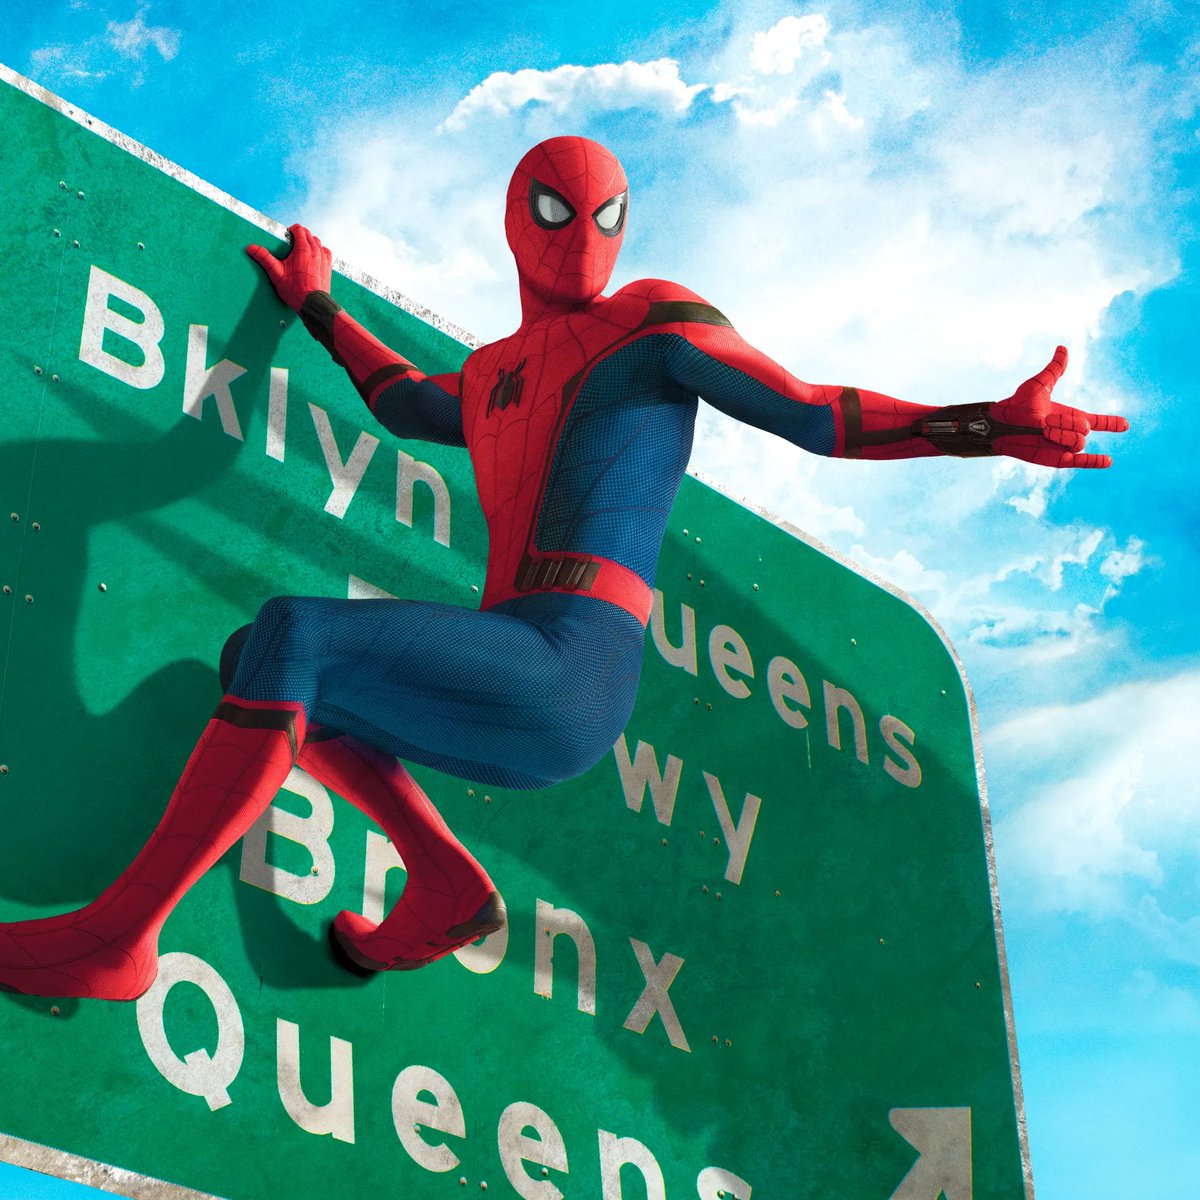 Según se informa, 'SPIDER-MAN 4' de Marvel Studios se está escribiendo actualmente.

El plan es que se lance antes que #AvengersKangDynasty

#SpiderMan #SpiderMan4 #MarvelStudios #Marvel